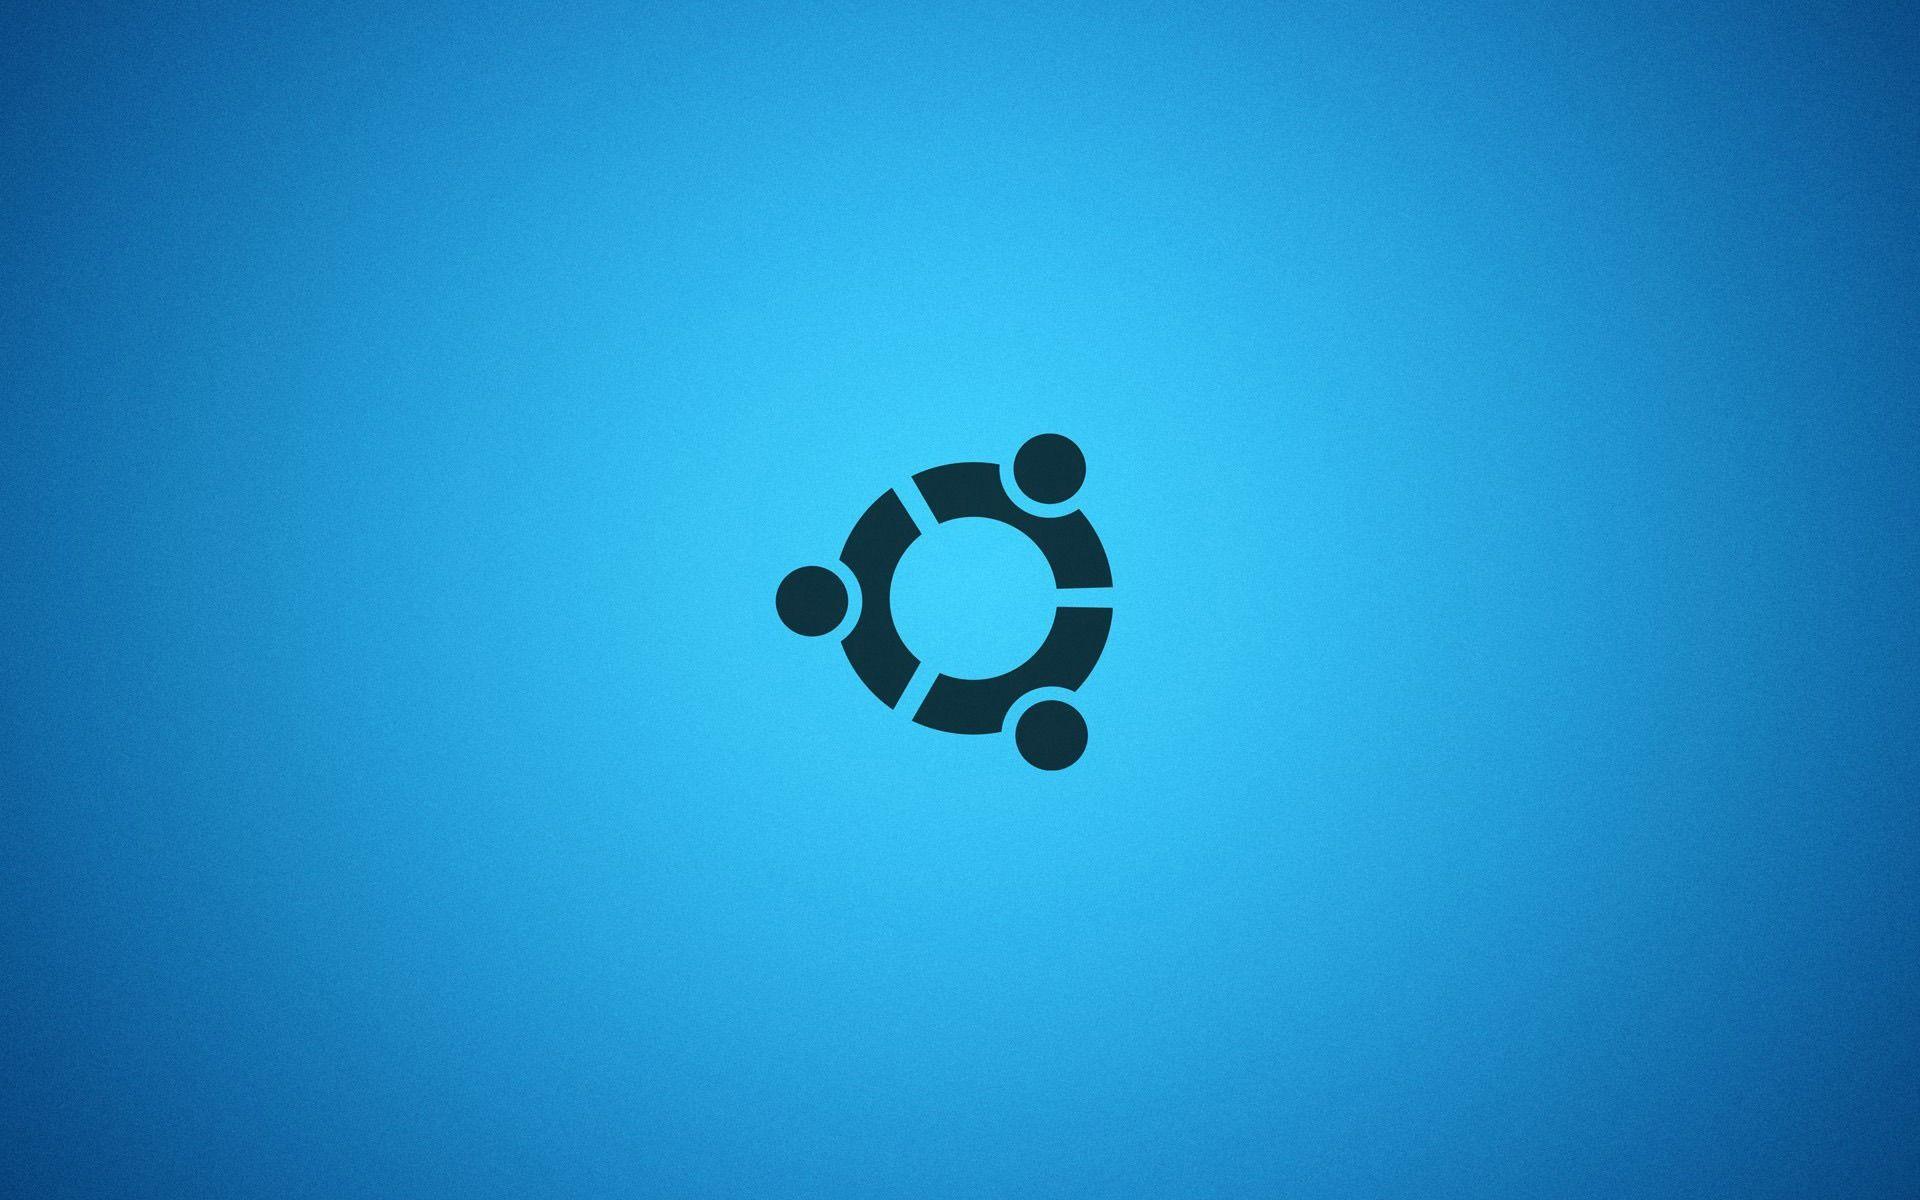 Ubuntu Blue Linux System Desktop Background Wallpaper